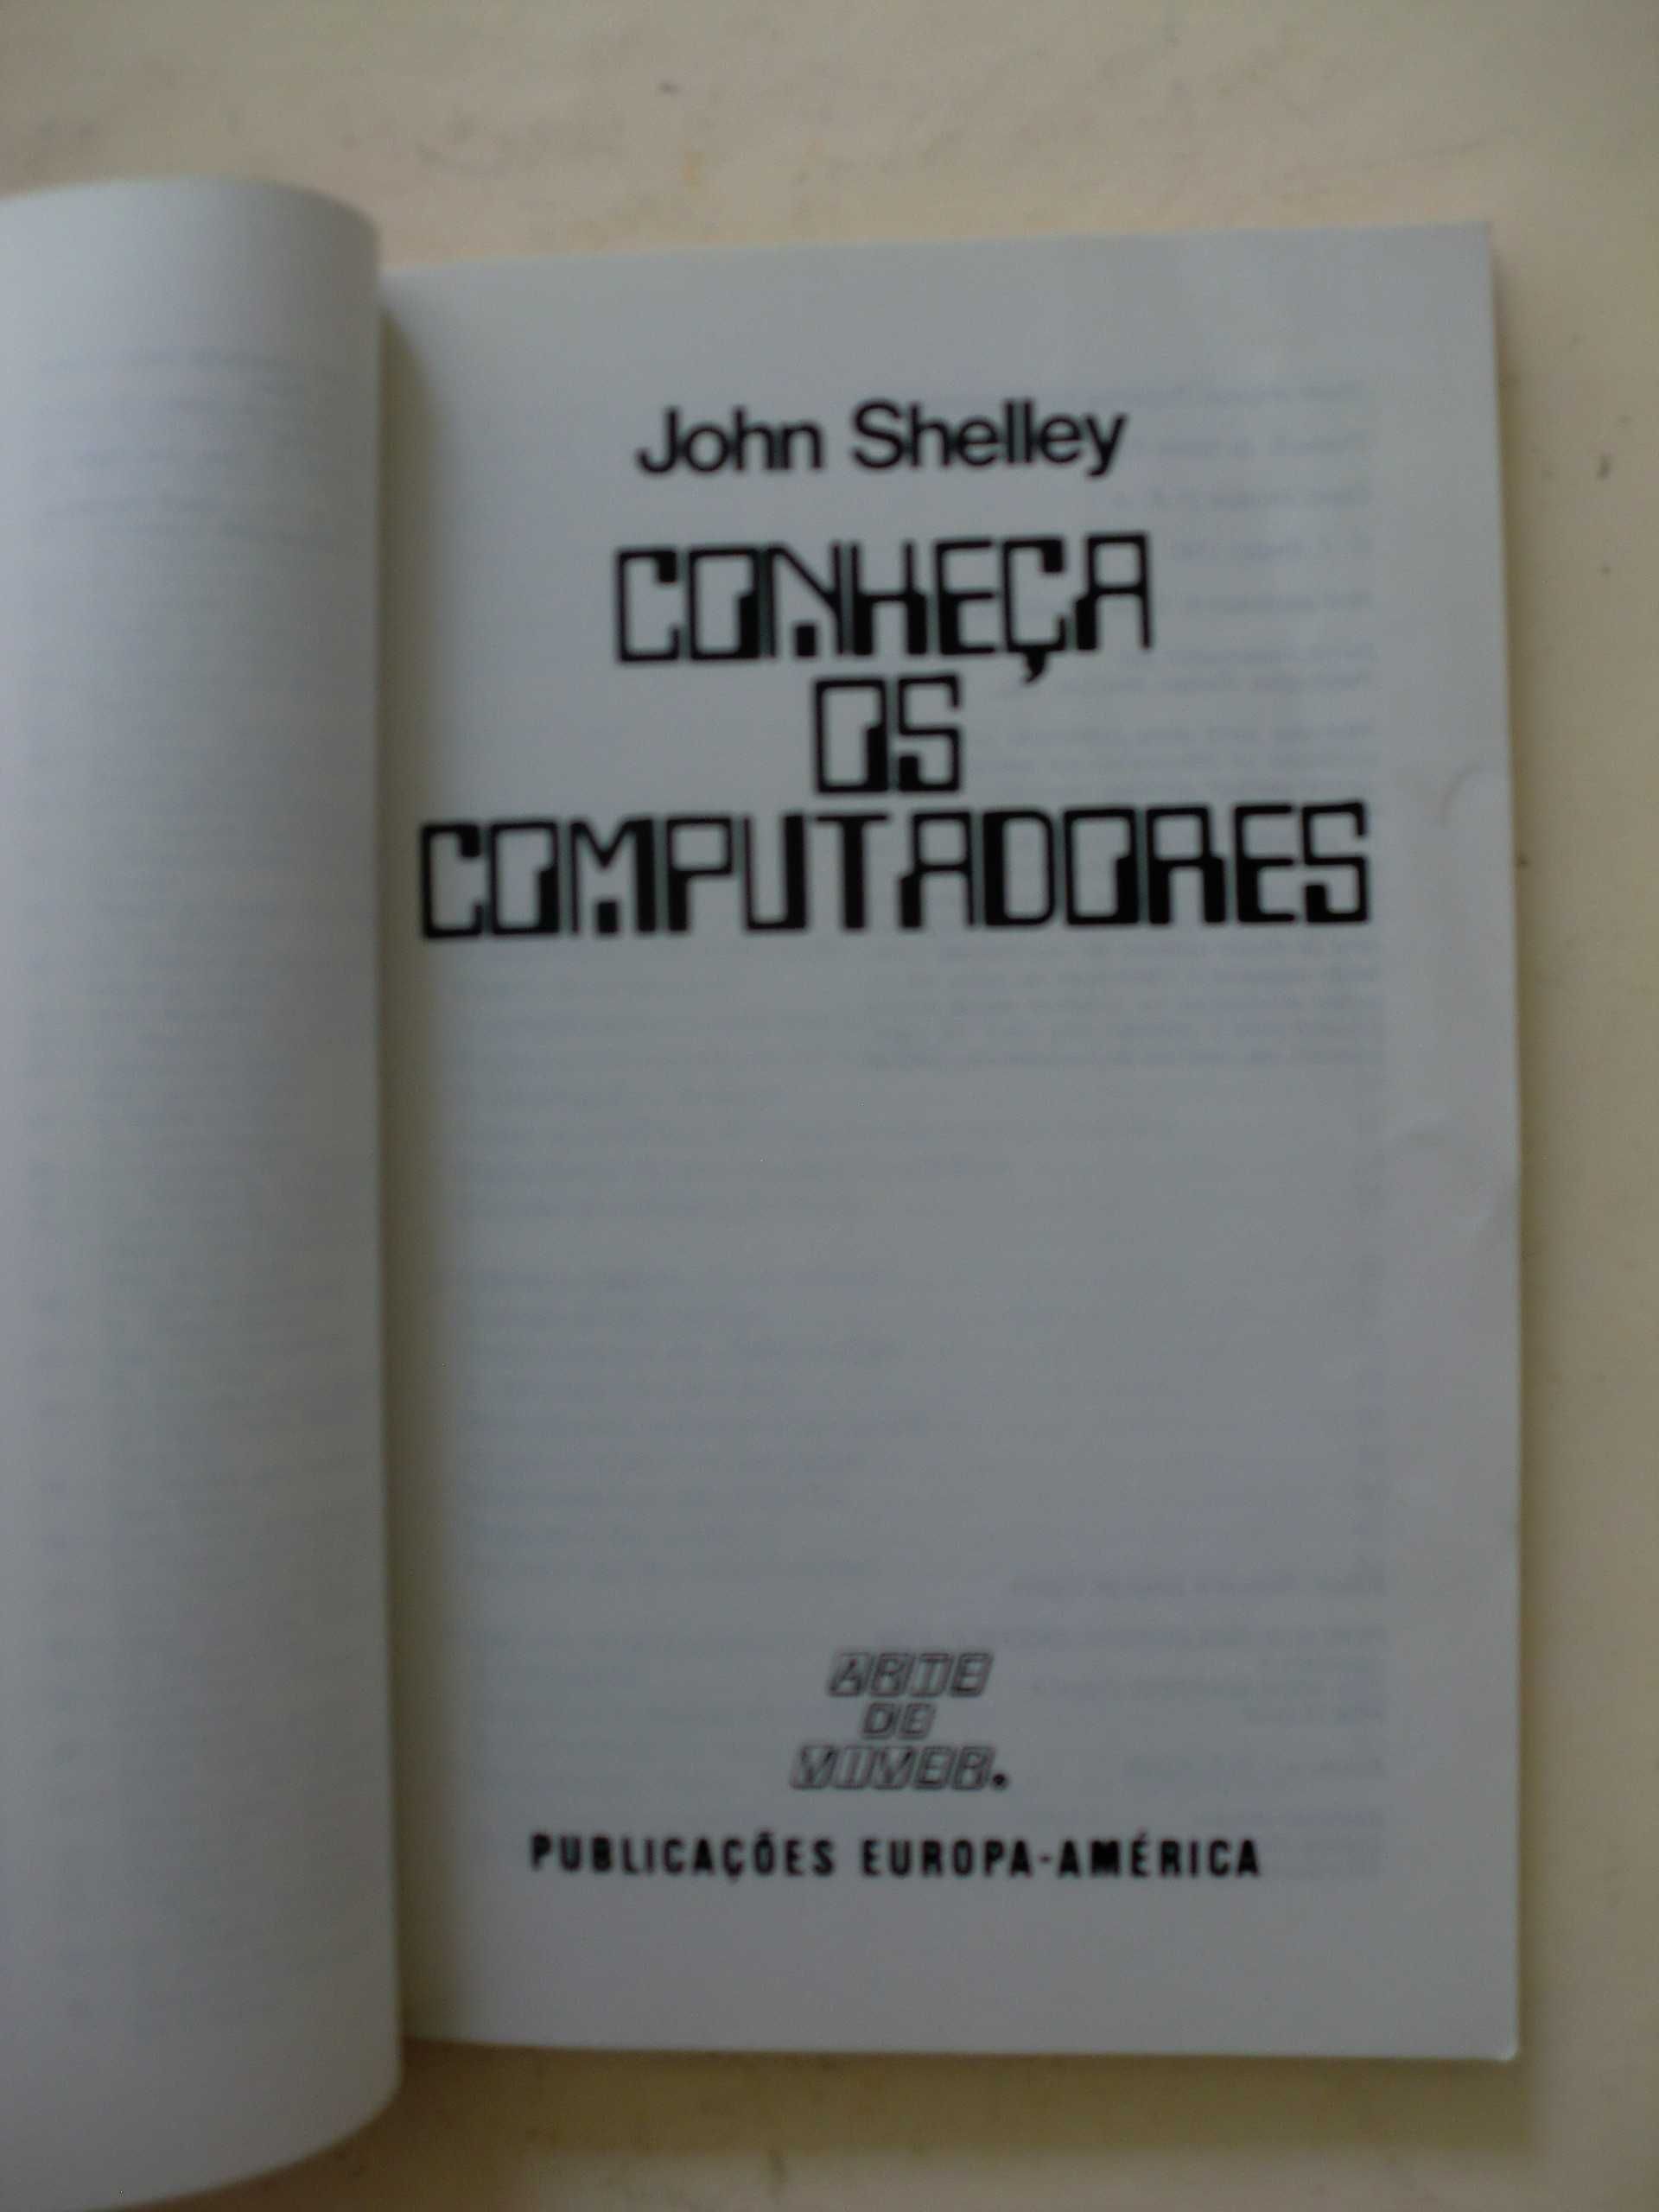 Conheça os Computadores
de John Shelley